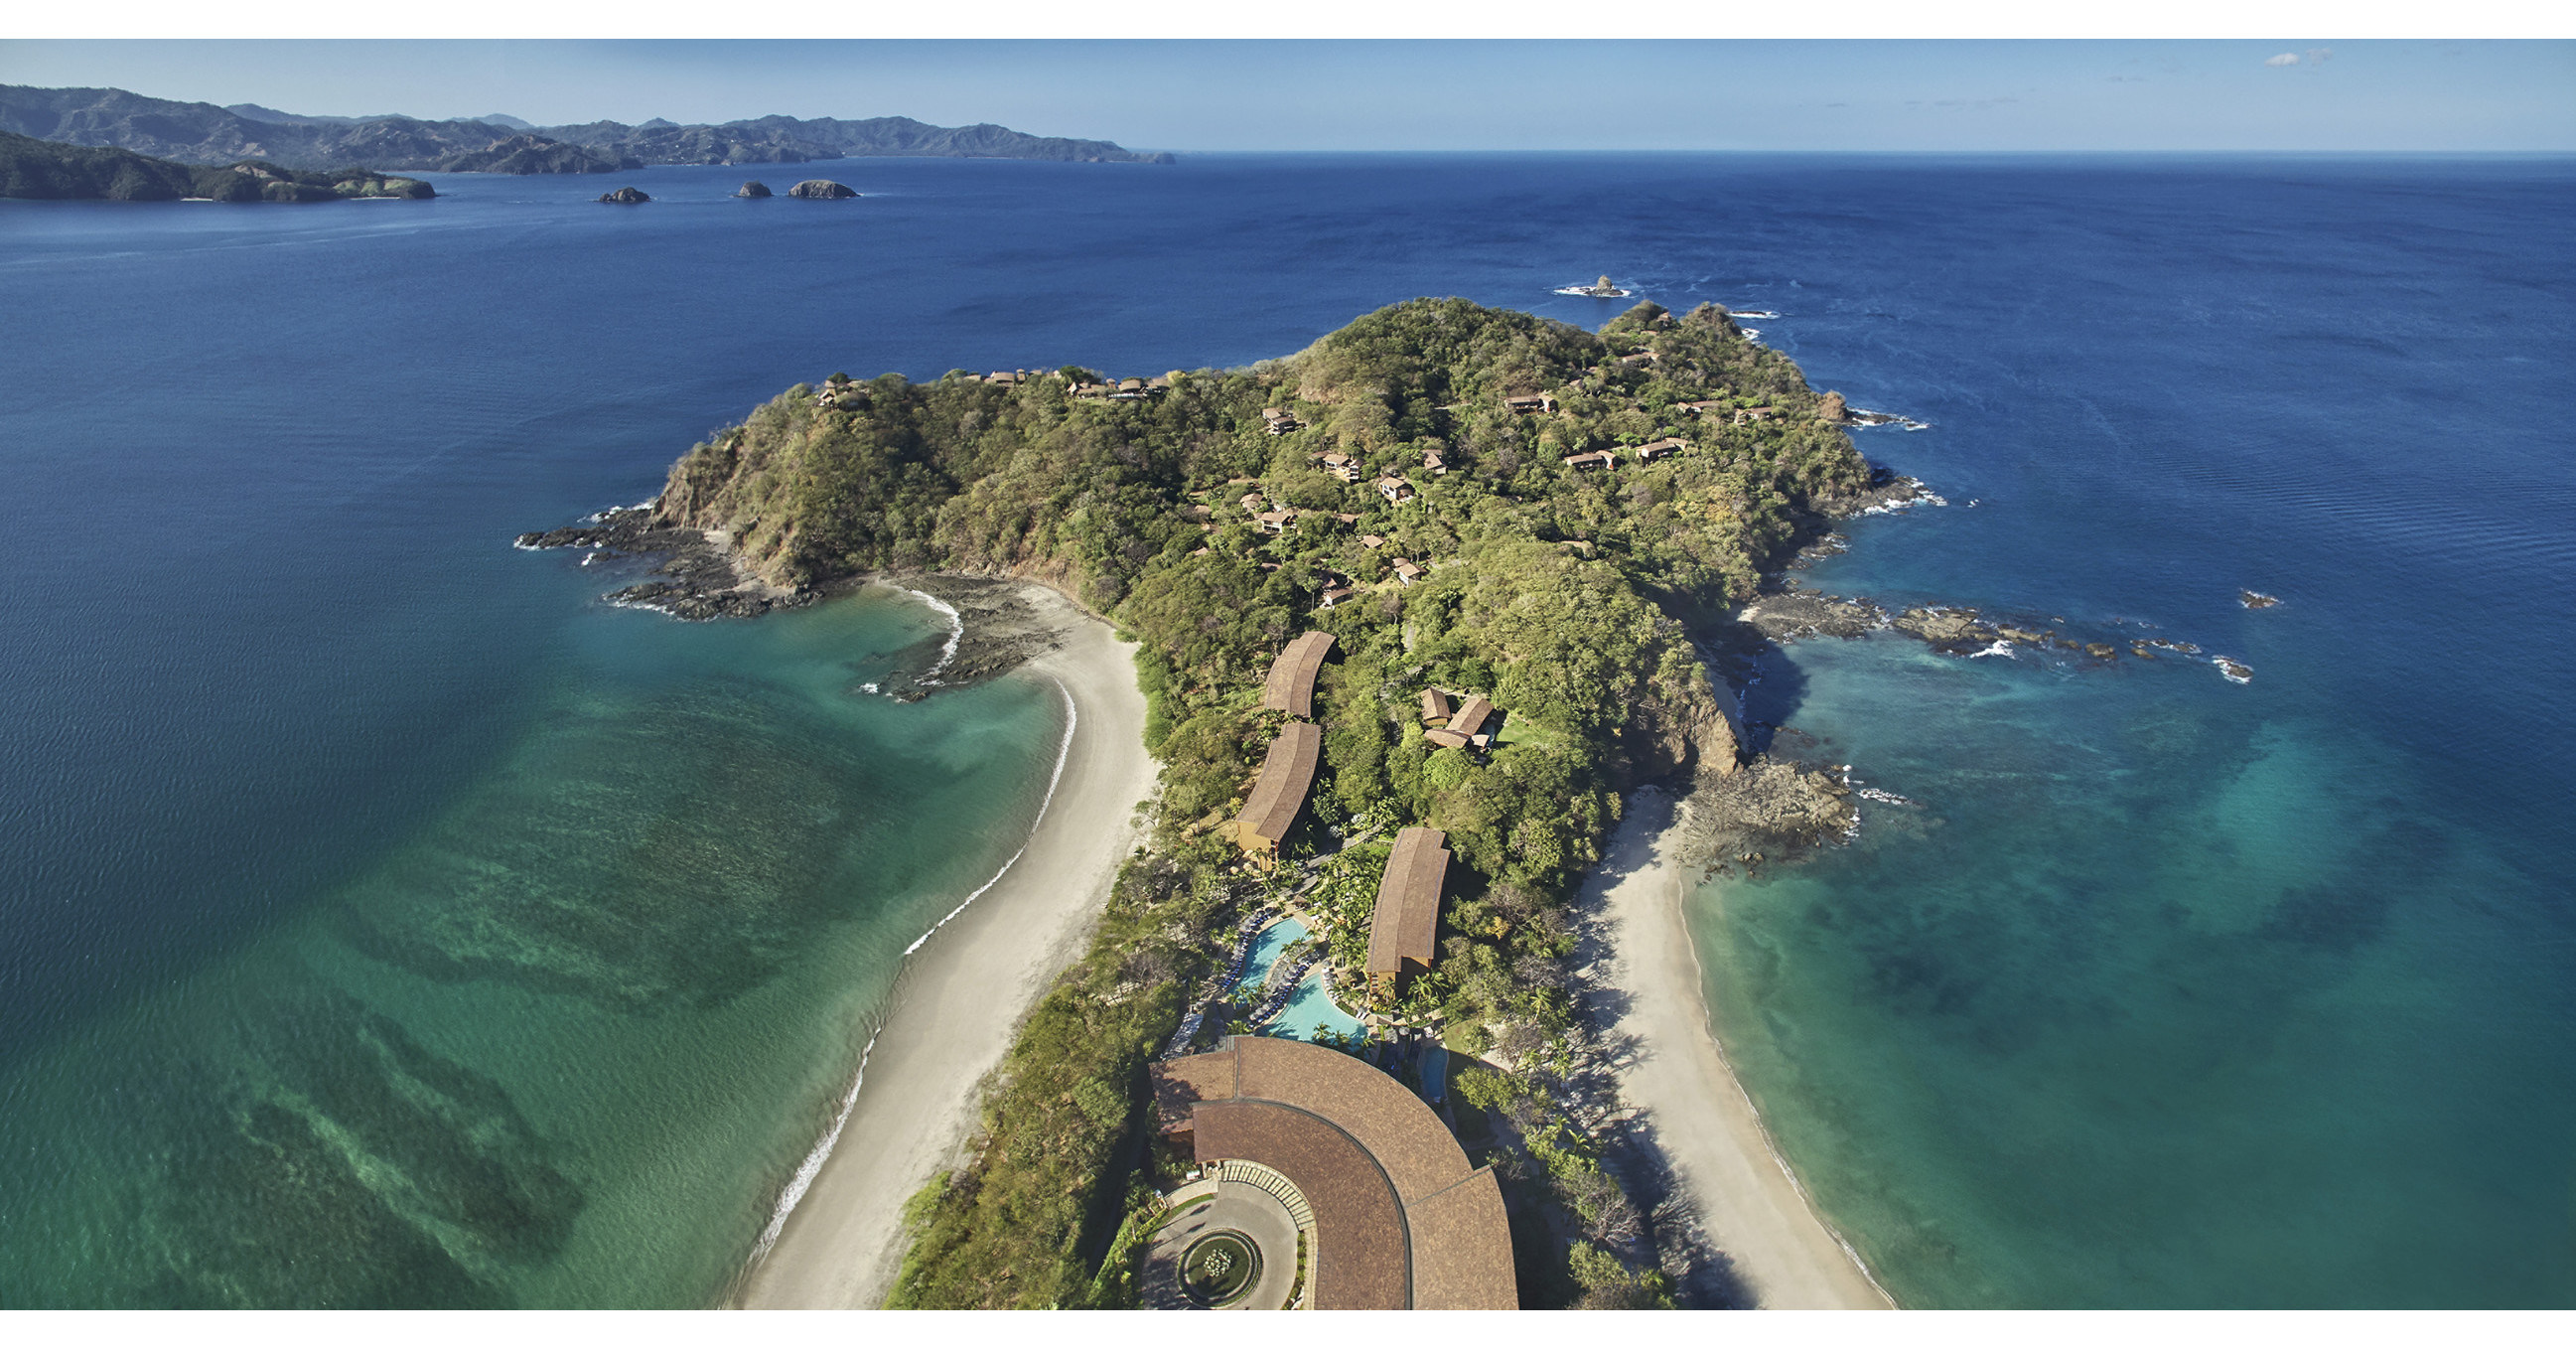 El Four Seasons Resort Costa Rica ha sido galardonado con la calificación de cinco estrellas de Forbes Travel Guide y tiene este honor exclusivamente en Costa Rica y América Central.